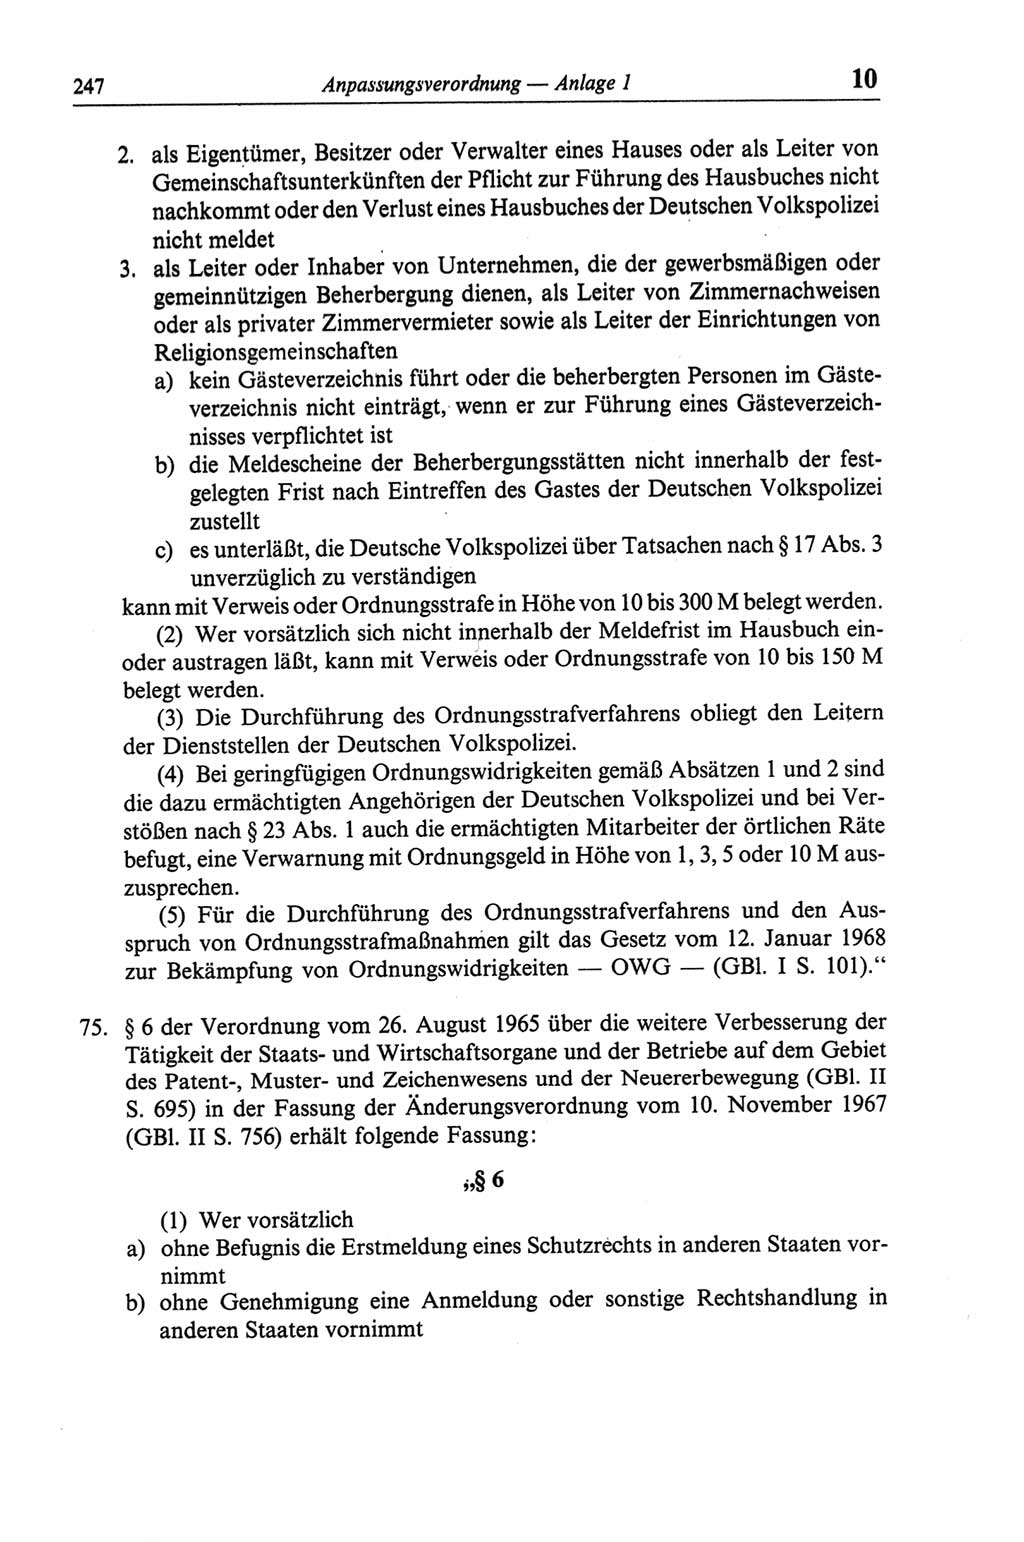 Strafgesetzbuch (StGB) der Deutschen Demokratischen Republik (DDR) und angrenzende Gesetze und Bestimmungen 1968, Seite 247 (StGB Ges. Best. DDR 1968, S. 247)